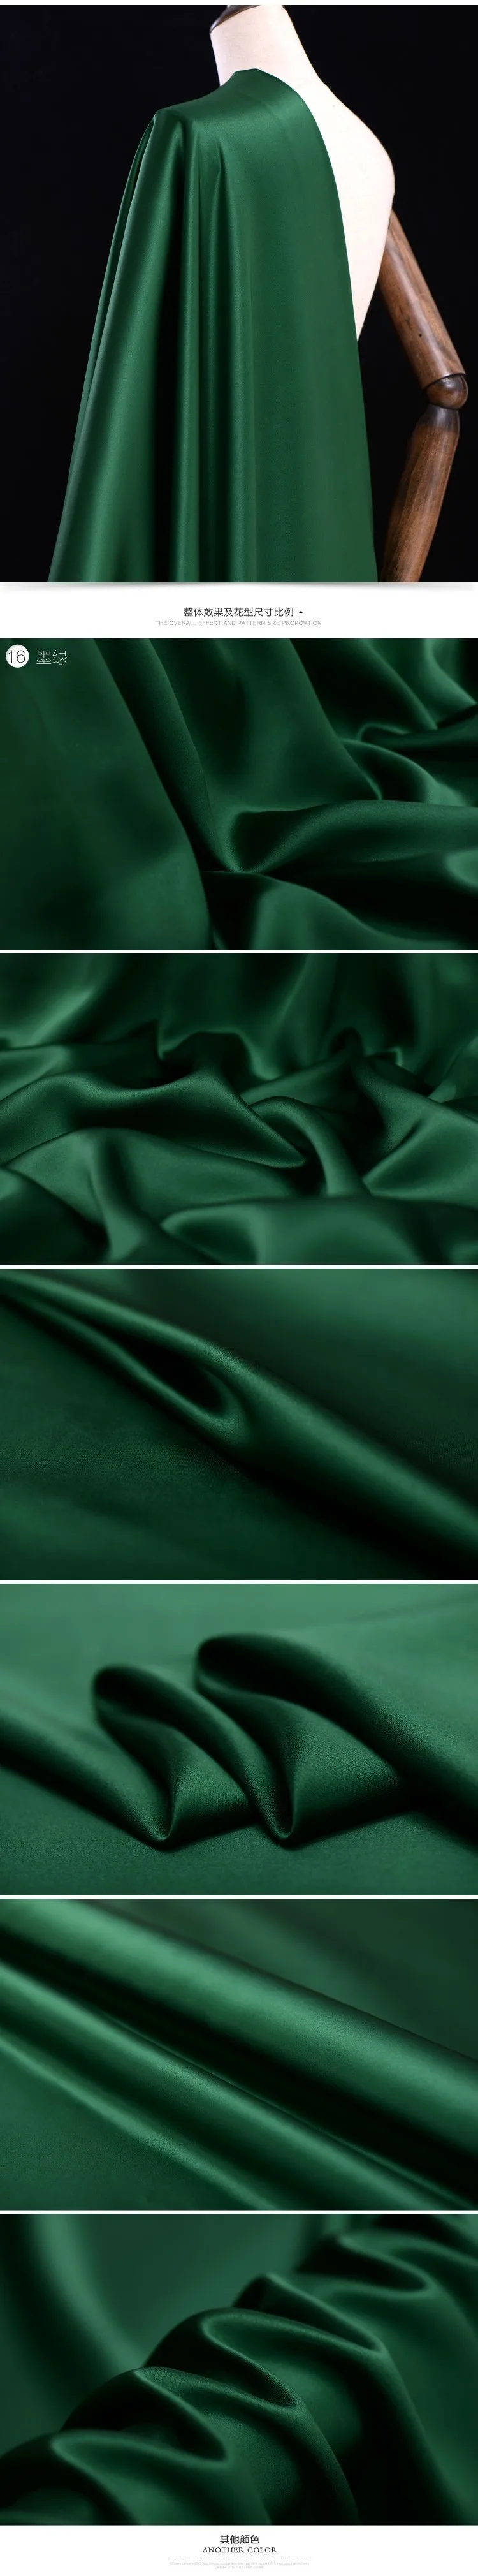 Горячая Распродажа 40 момме роскошный блокбастер чистый цвет шелк тутового шелкопряда натуральная ткань для платья рубашки tissu au метр Яркая Ткань DIY